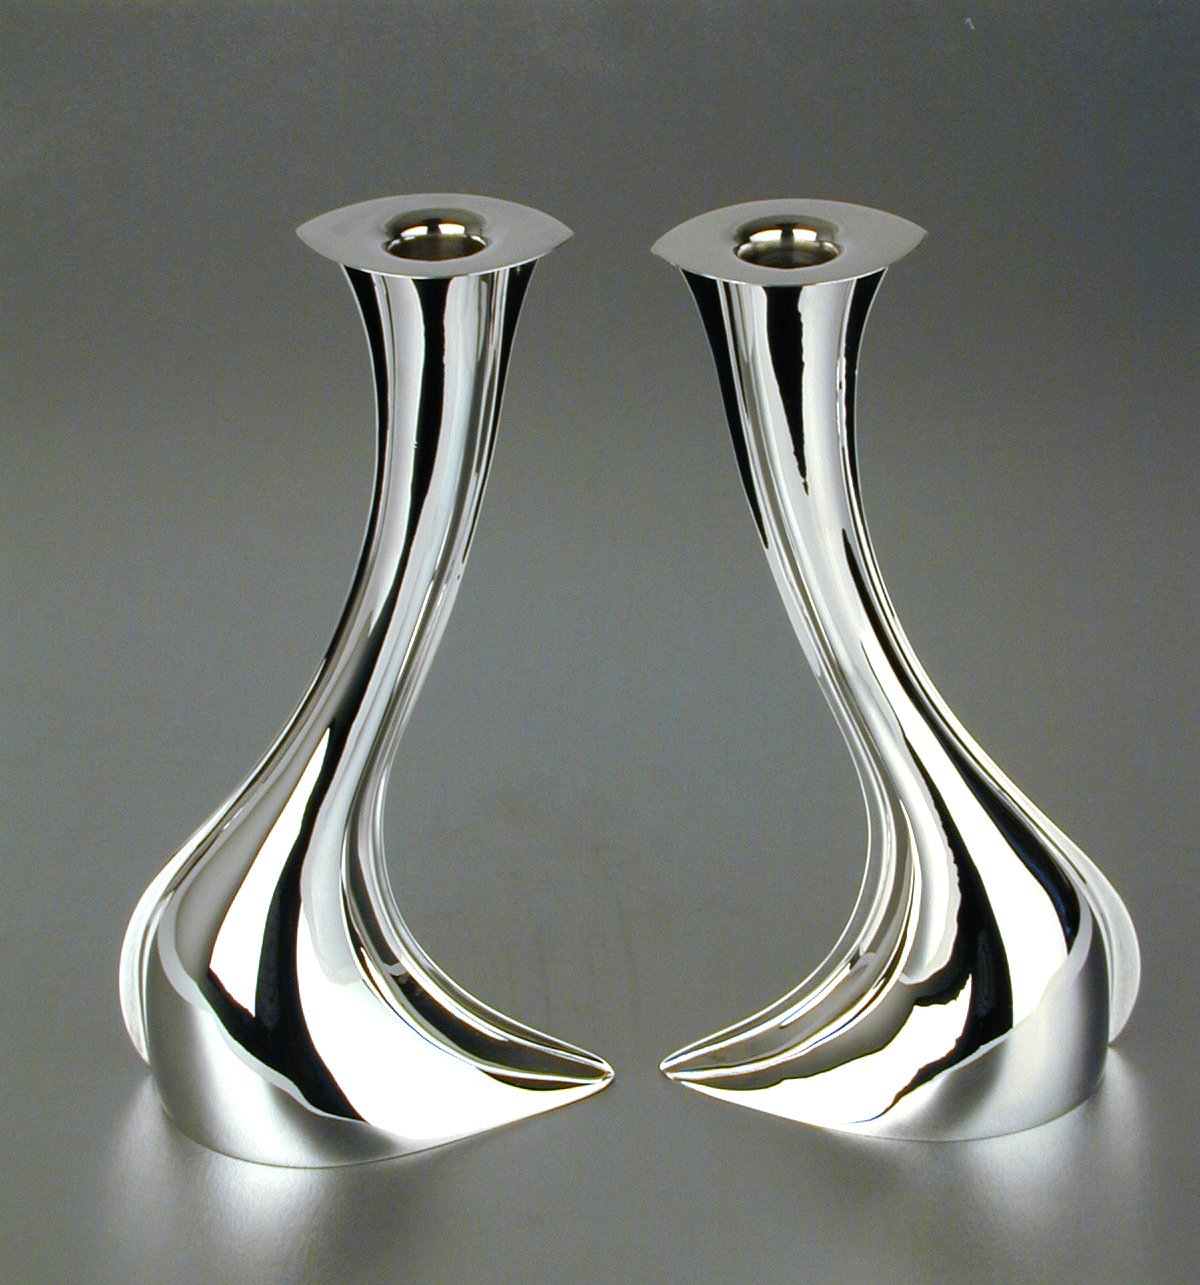 Petalo silver candlesticks from De Vecchi